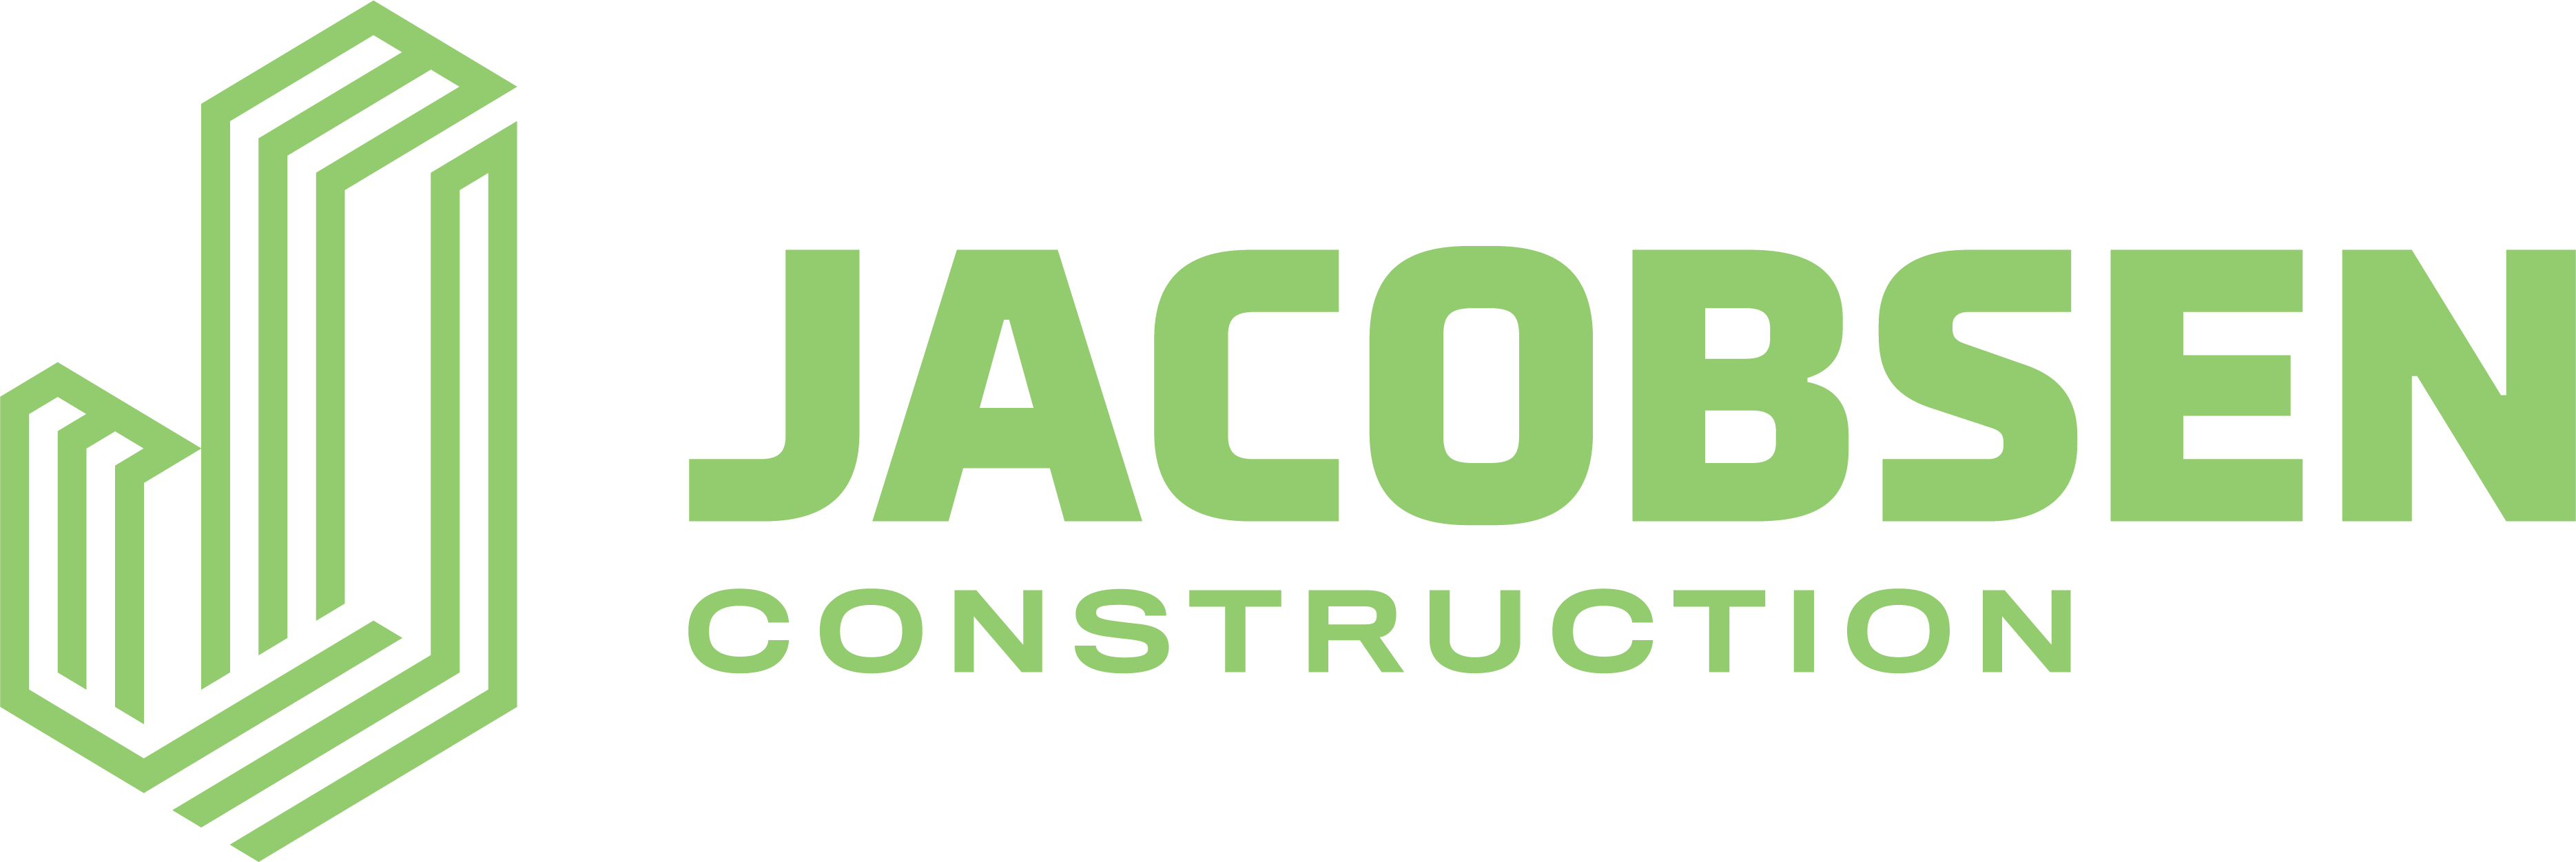 Jacobsen Construction Online Store